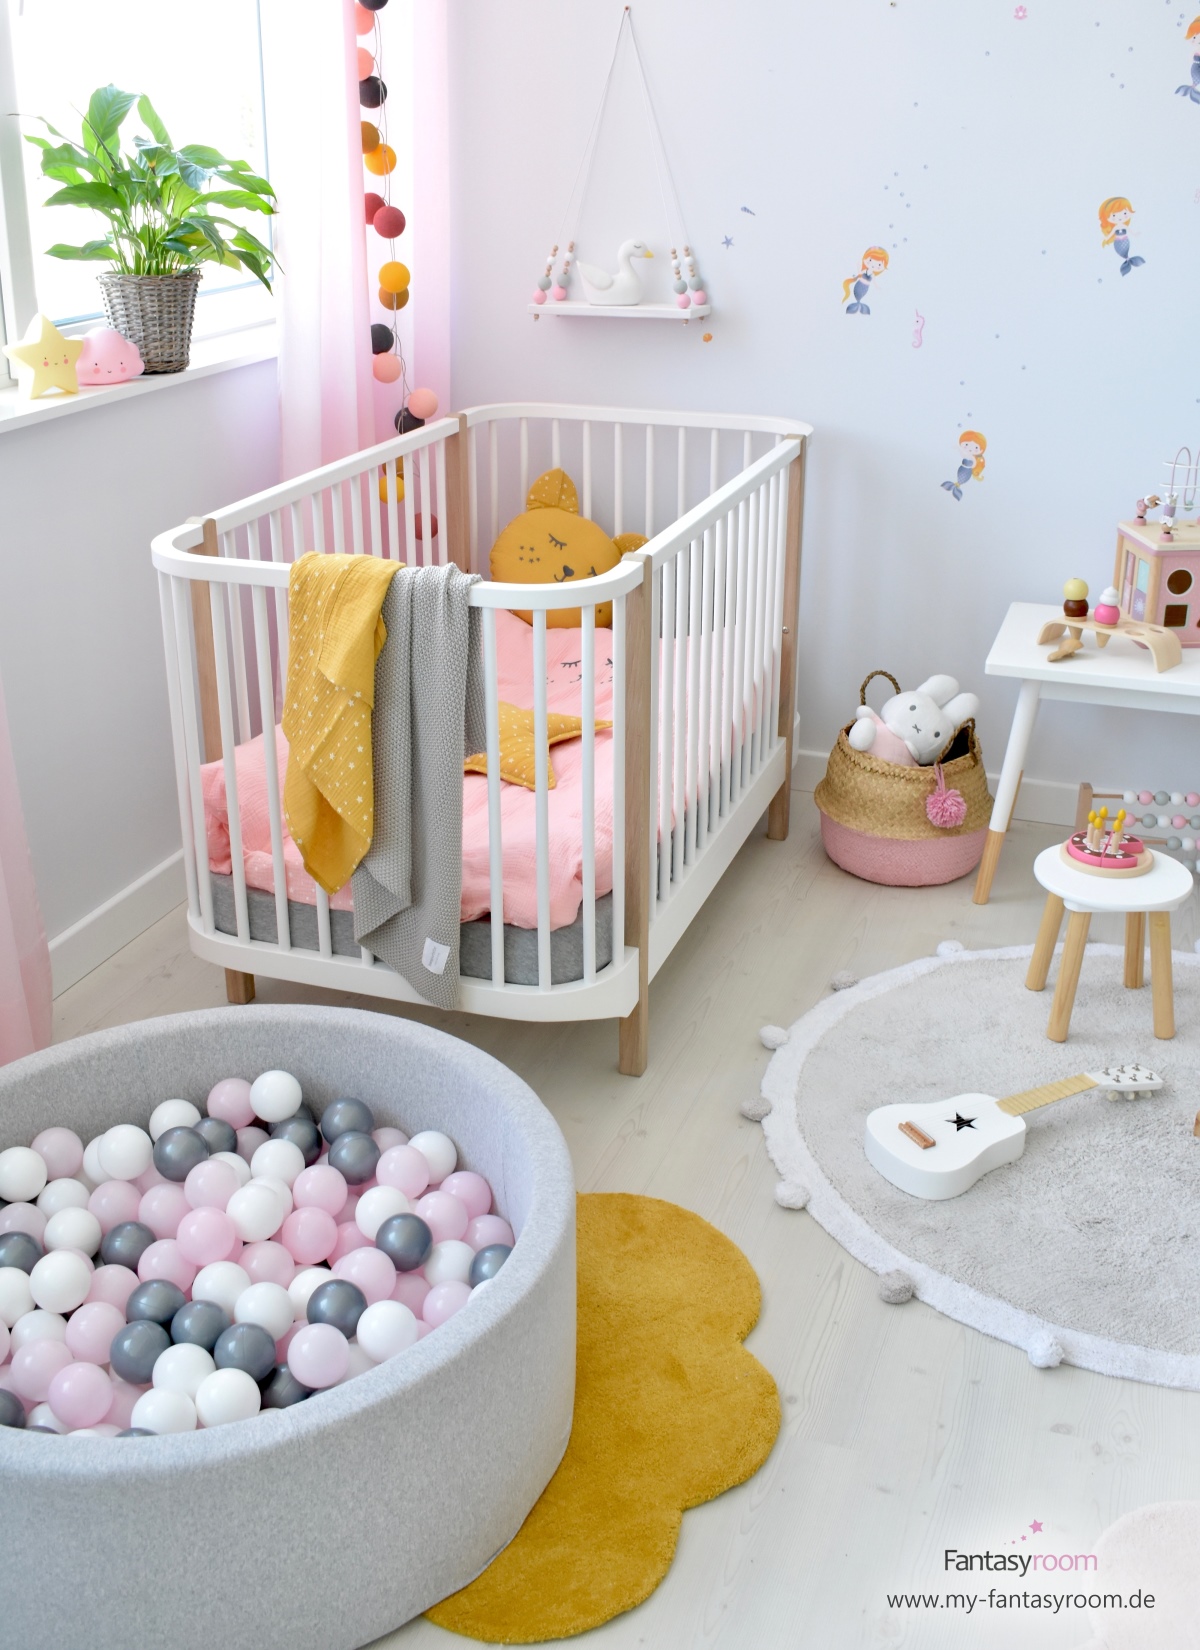 Bällebad mit Zusatzbällen im Mädchen Kinderzimmer mit Meerjungfrauen von Dinki Balloon